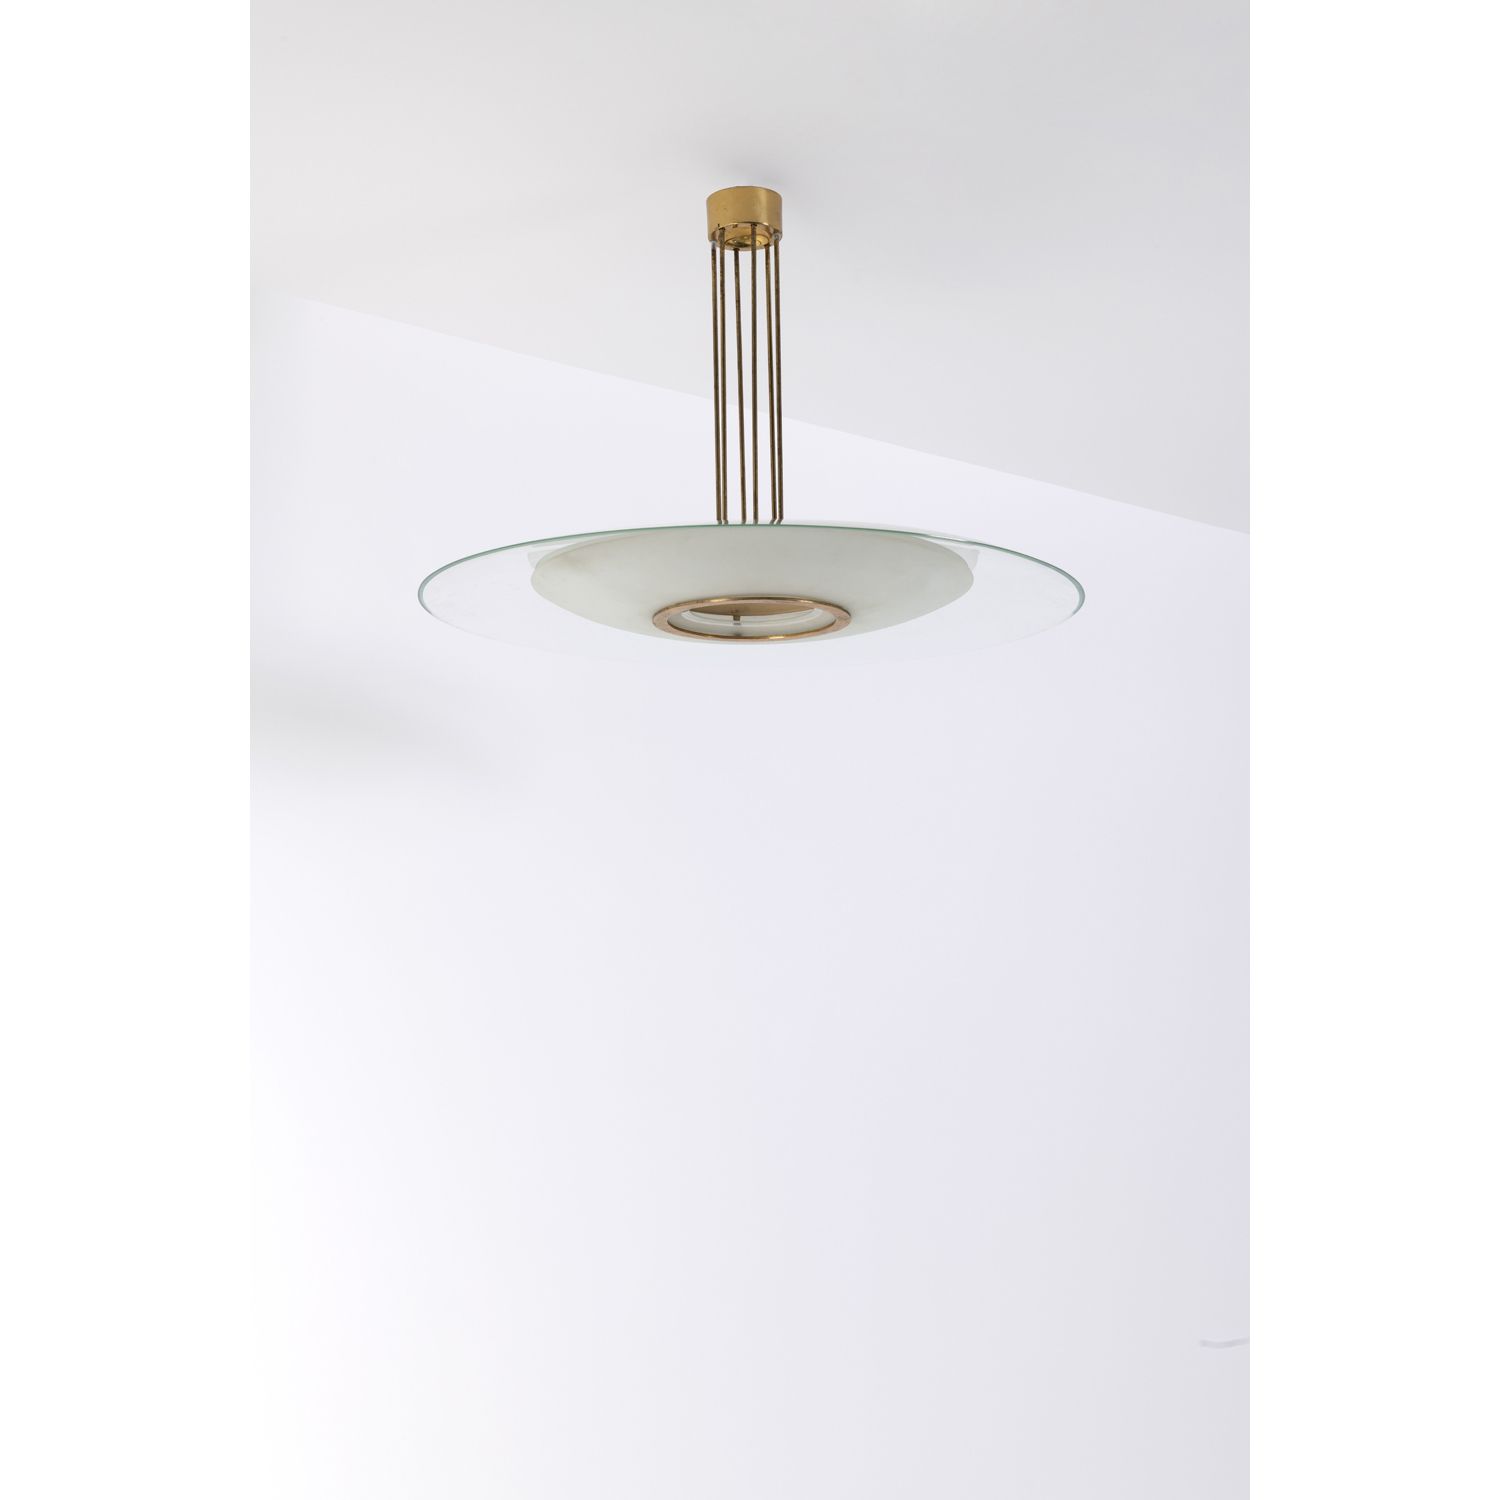 Null 马克斯-英格朗(1908-1969)

1498型

吊灯

黄铜、铝、玻璃和喷砂玻璃

Fontana Arte版

1955年左右创建的模型

高&hellip;